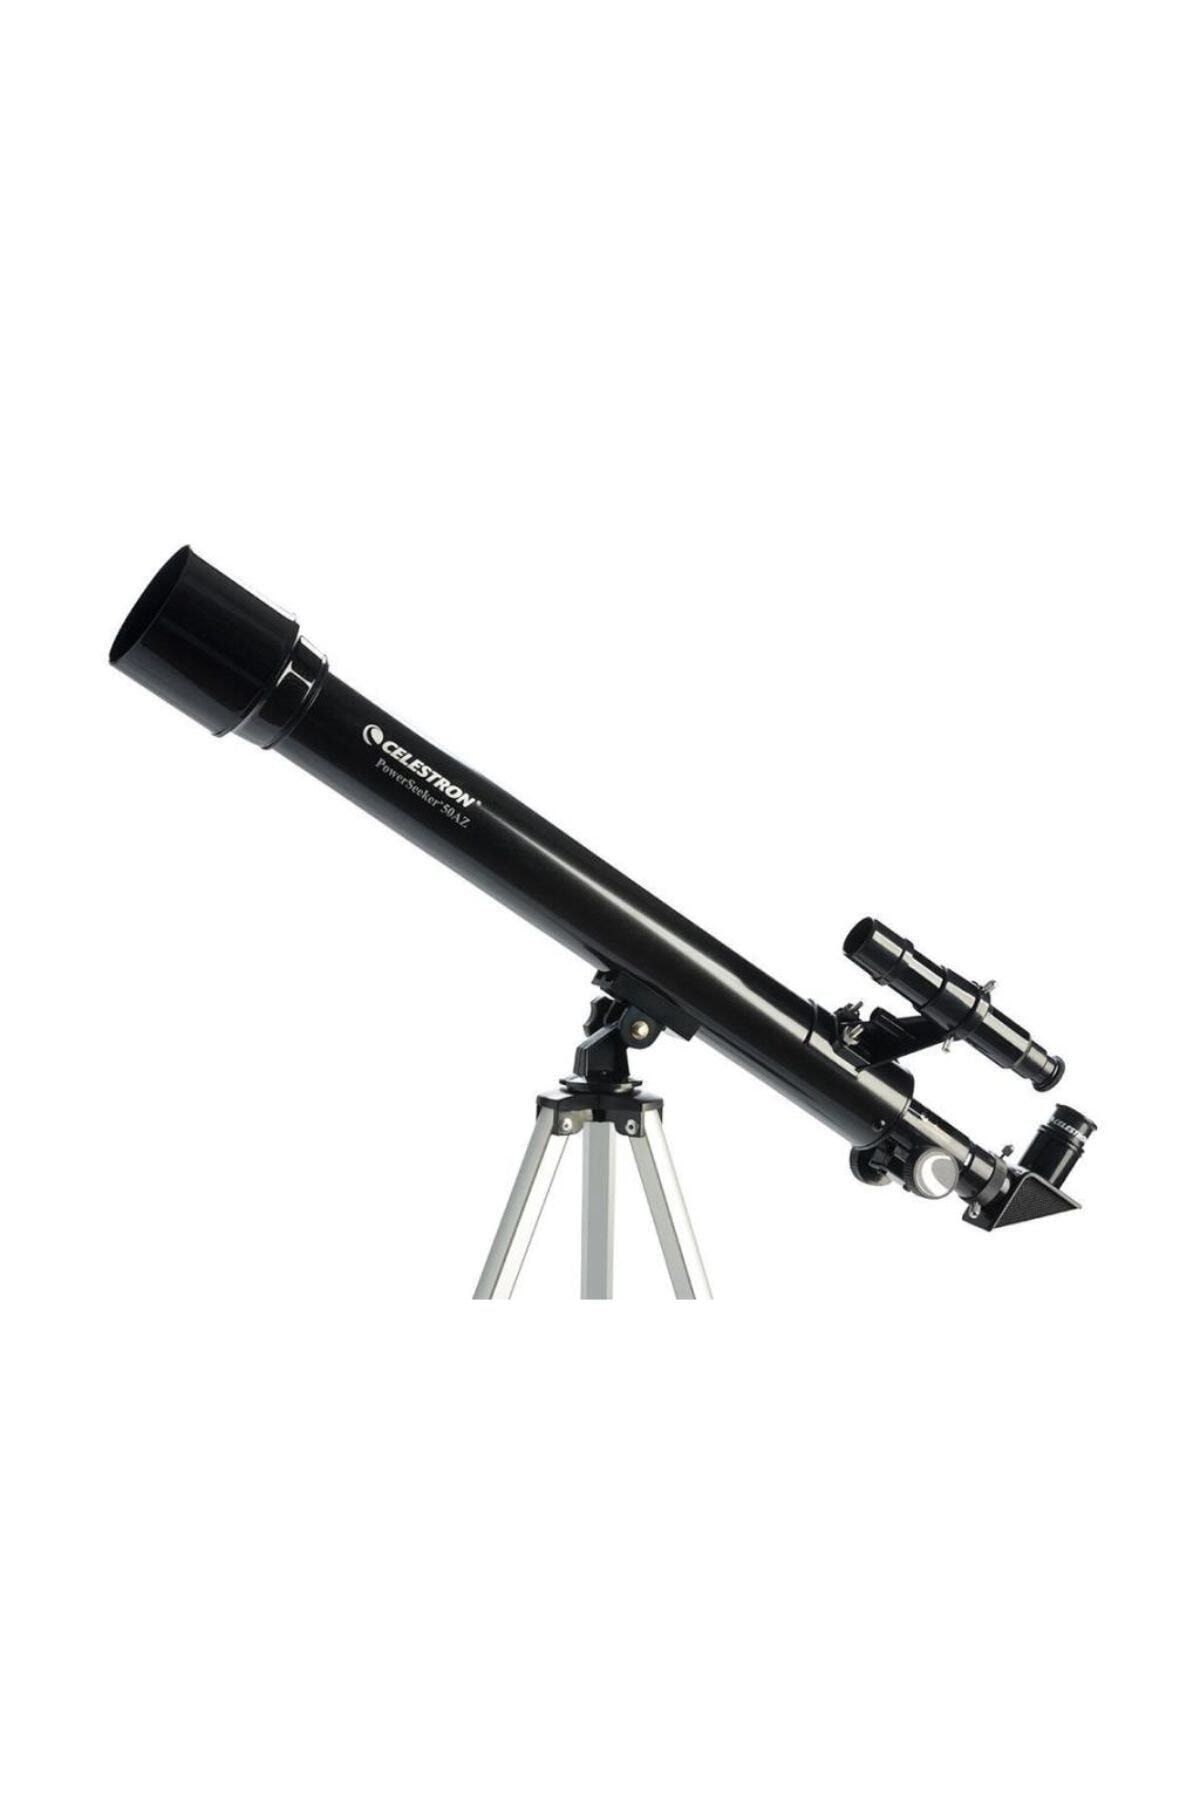 Celestron 21039 PowerSeeker 50AZ Teleskop